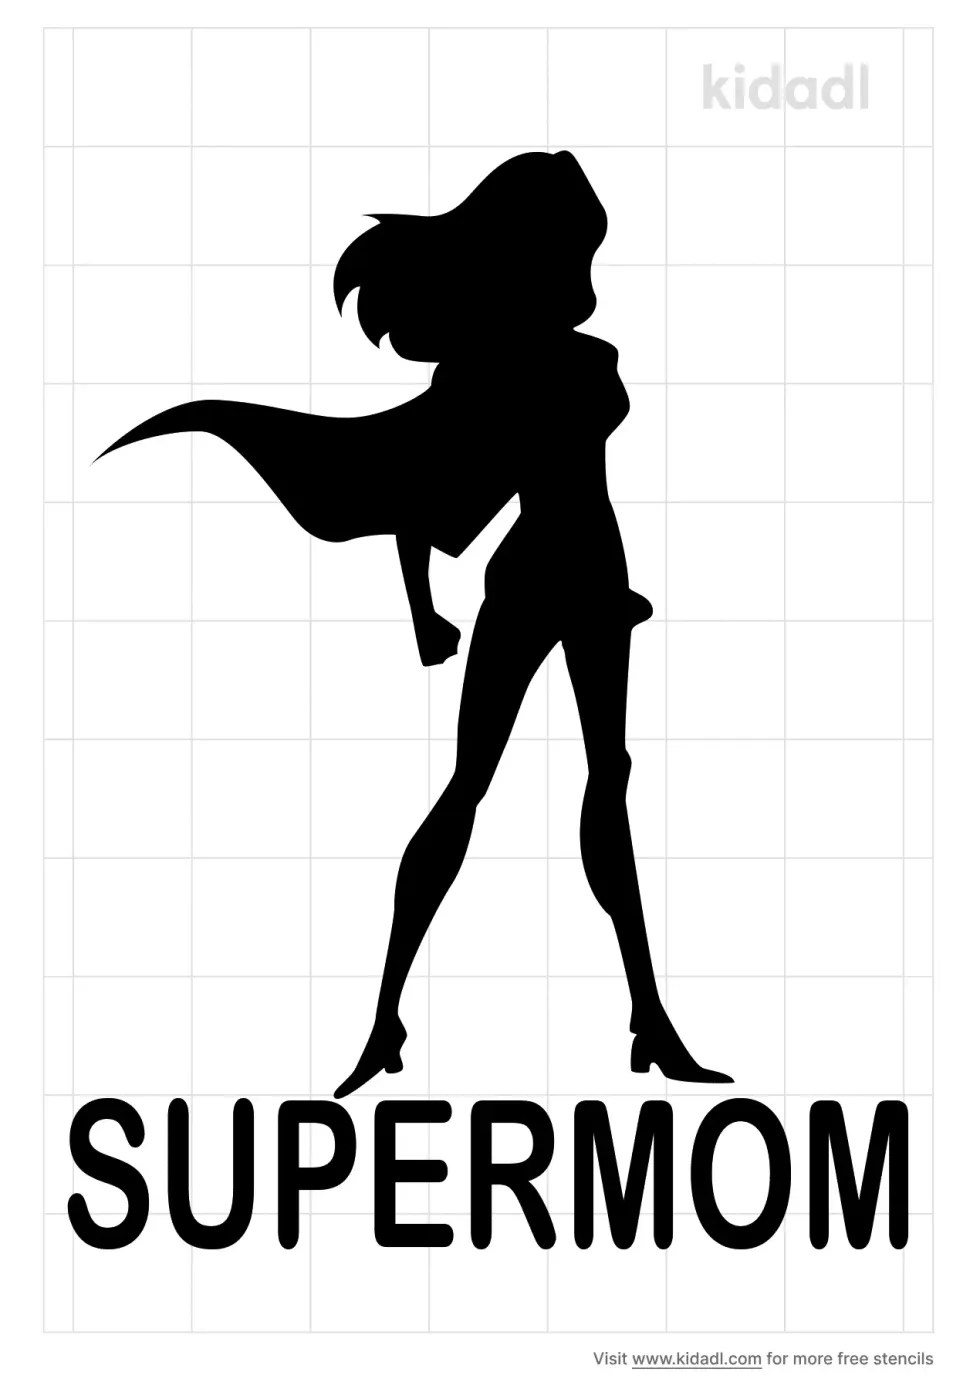 Supermom